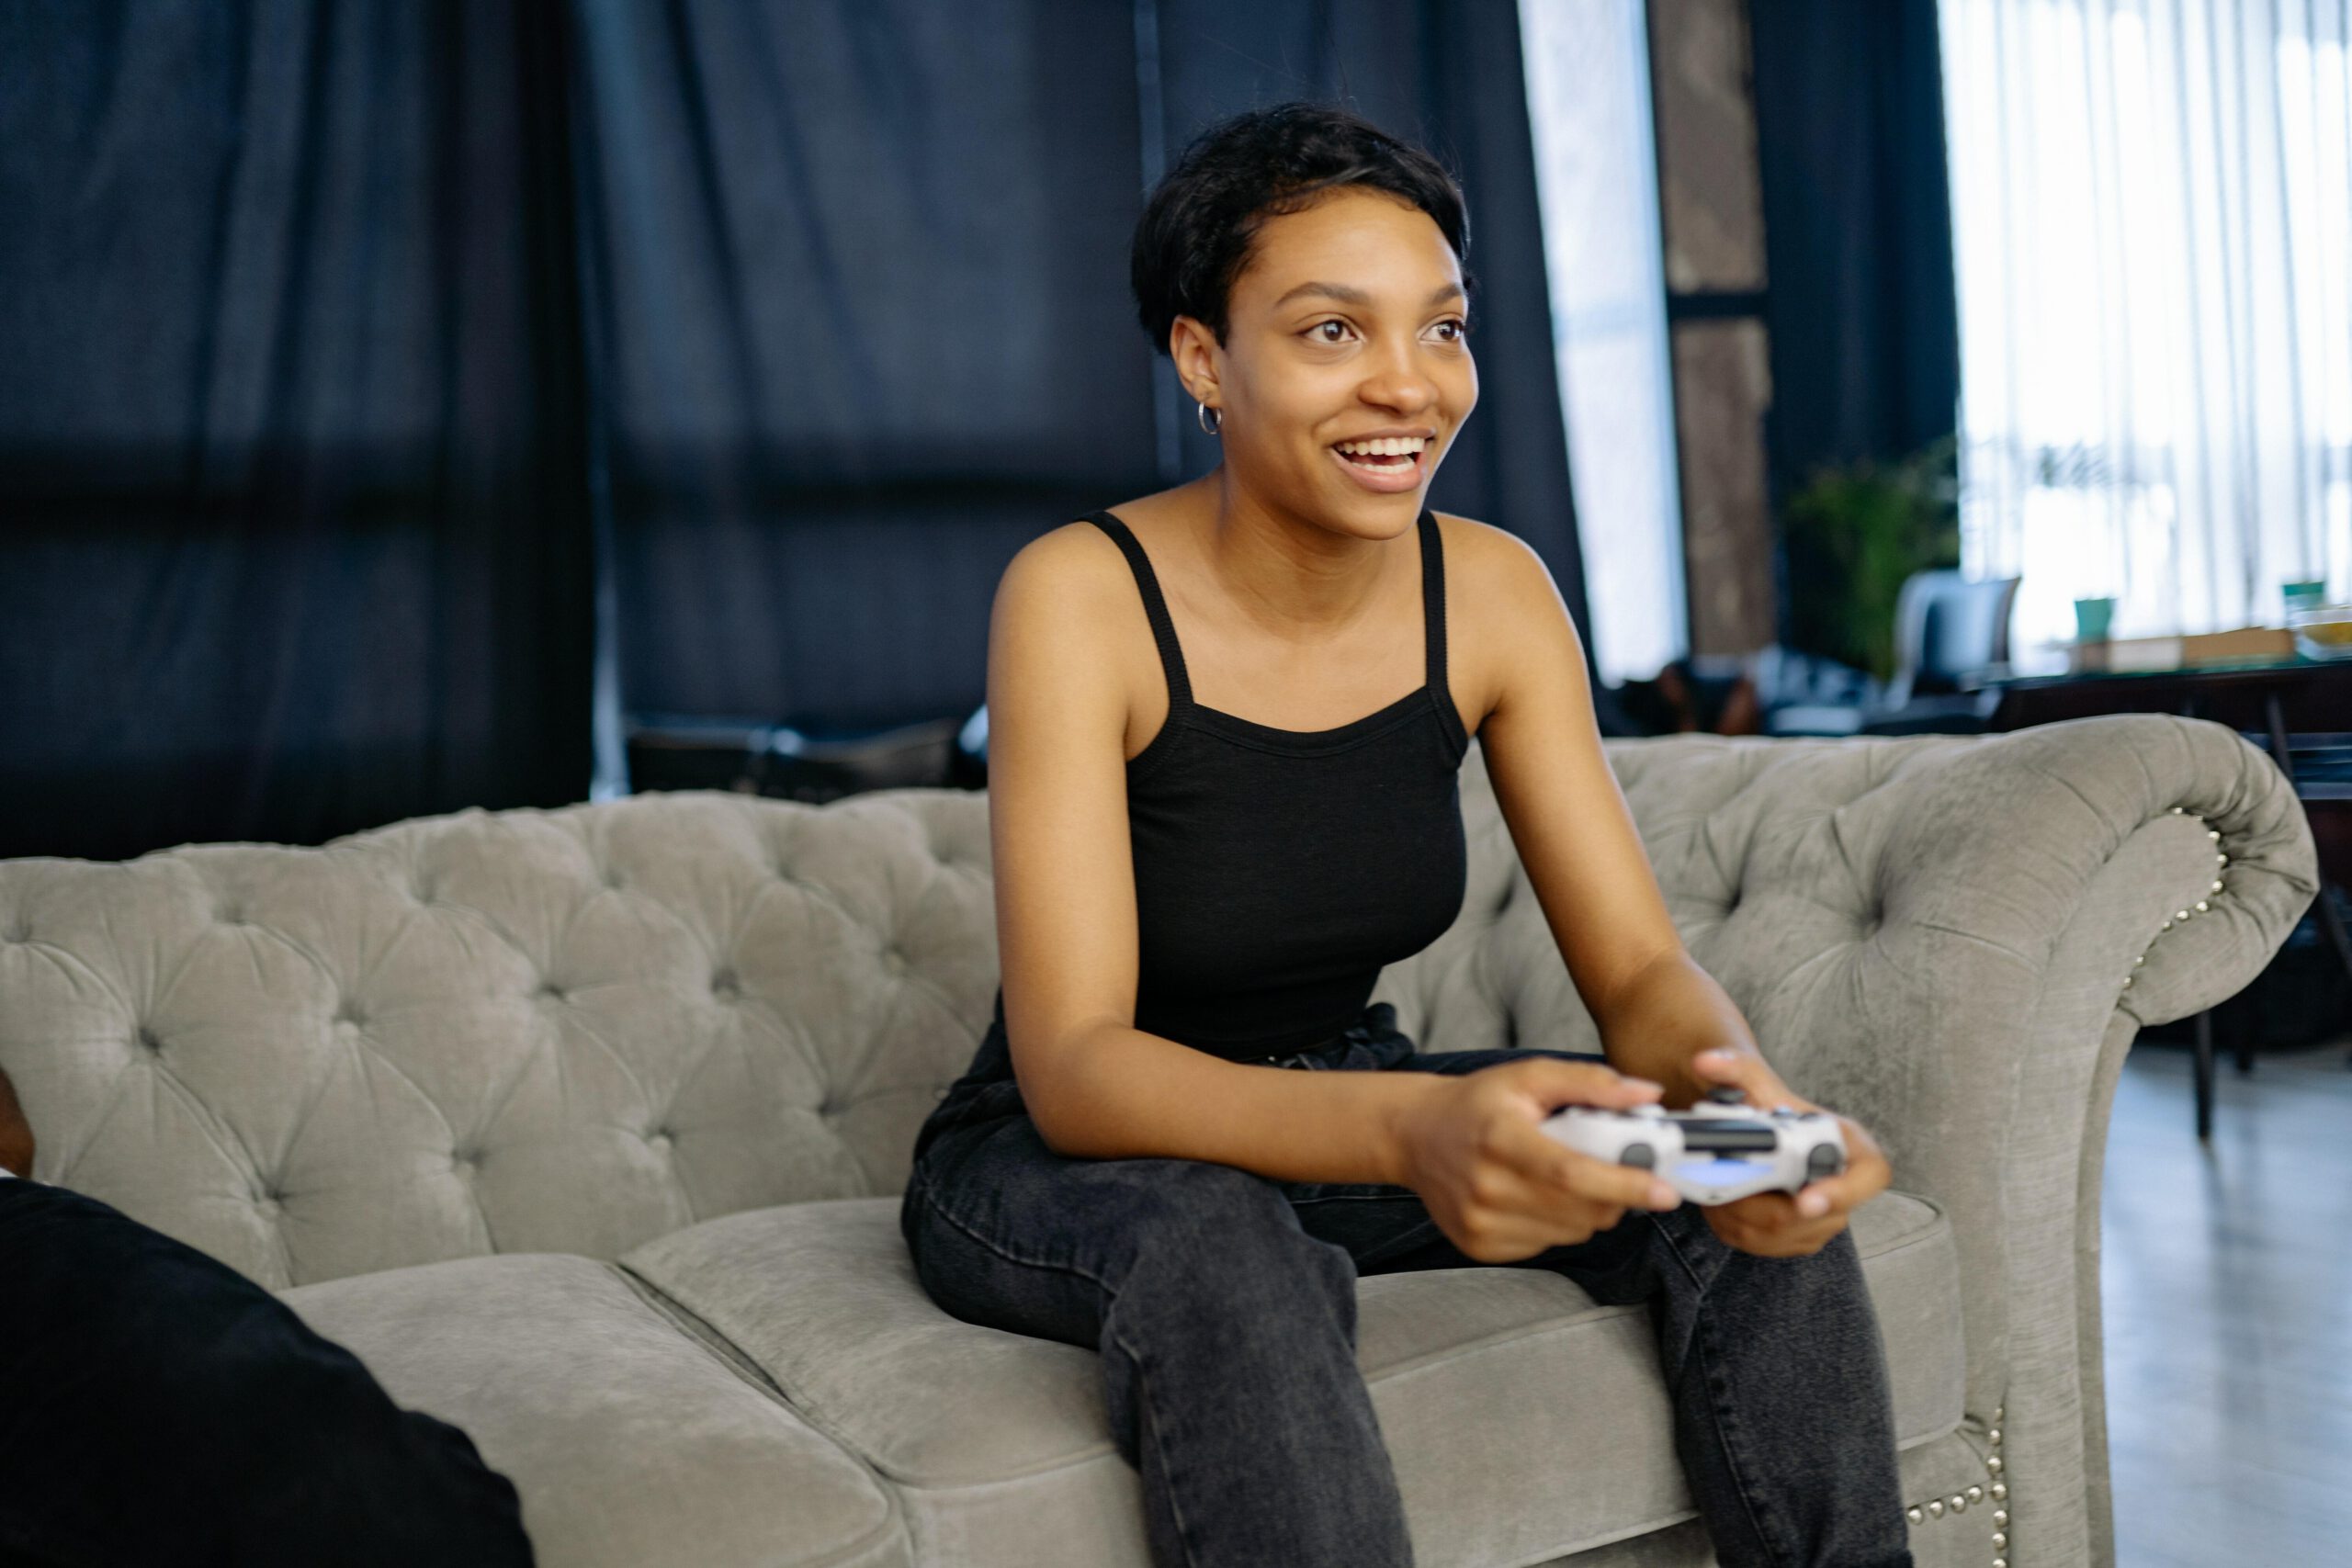 Girl gamer holding controller